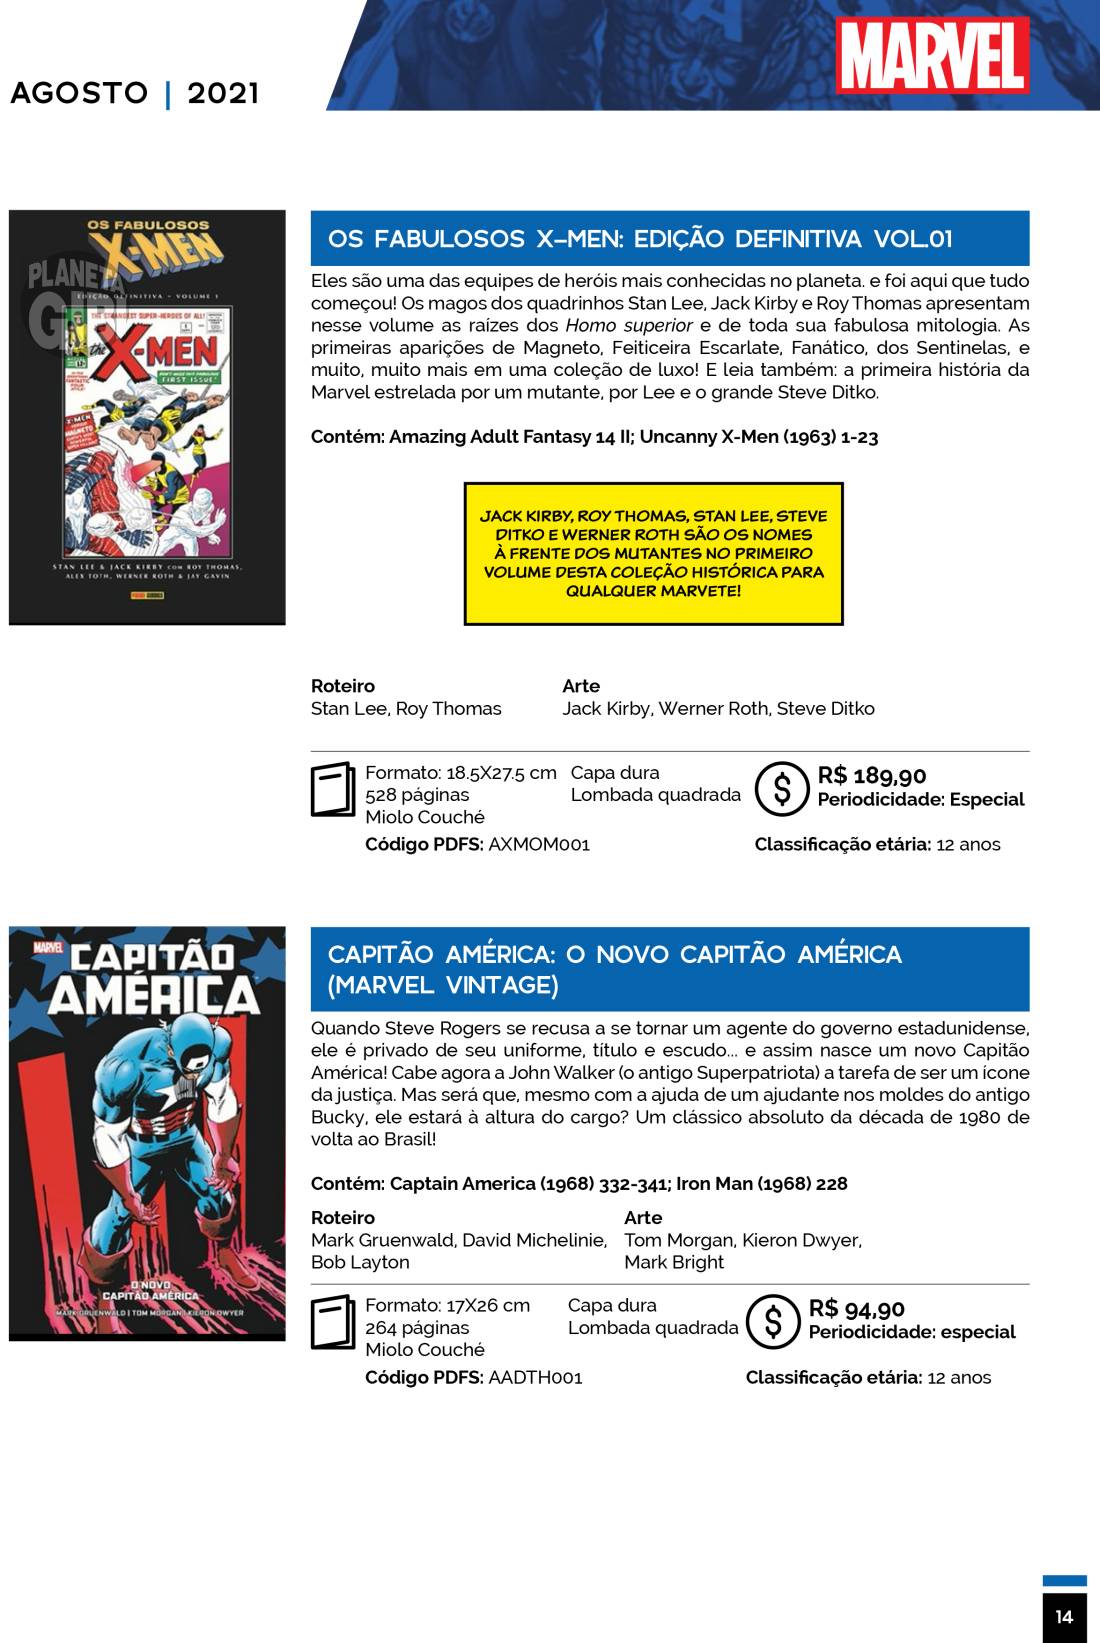 5 - Checklist Marvel/Panini (Julho/2020 - pág.09) - Página 9 Catalogo-Julho-Agosto-14